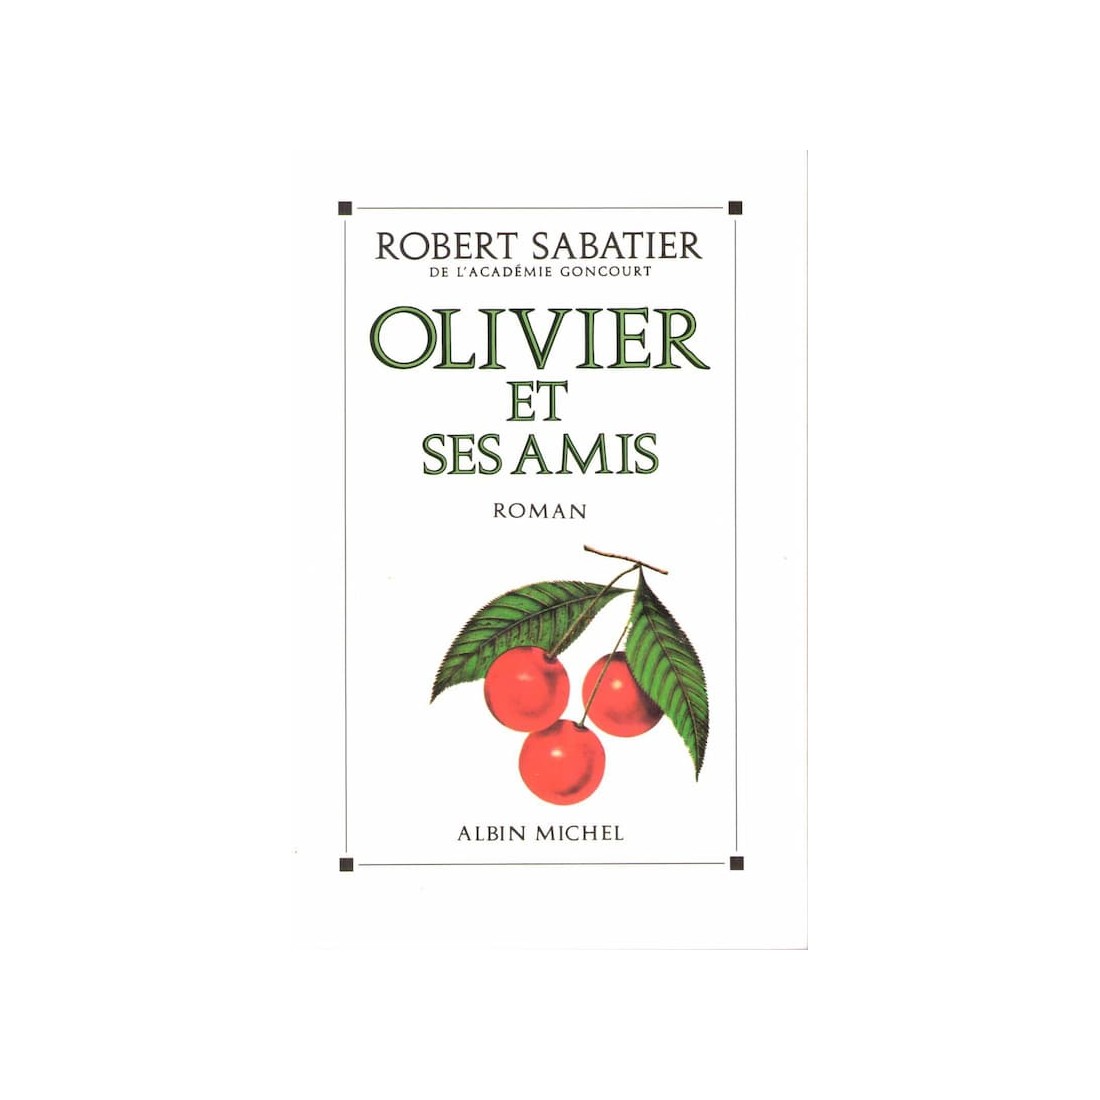 Olivier et ses amis - Roman de Robert Sabatier - Ocazlivres.com